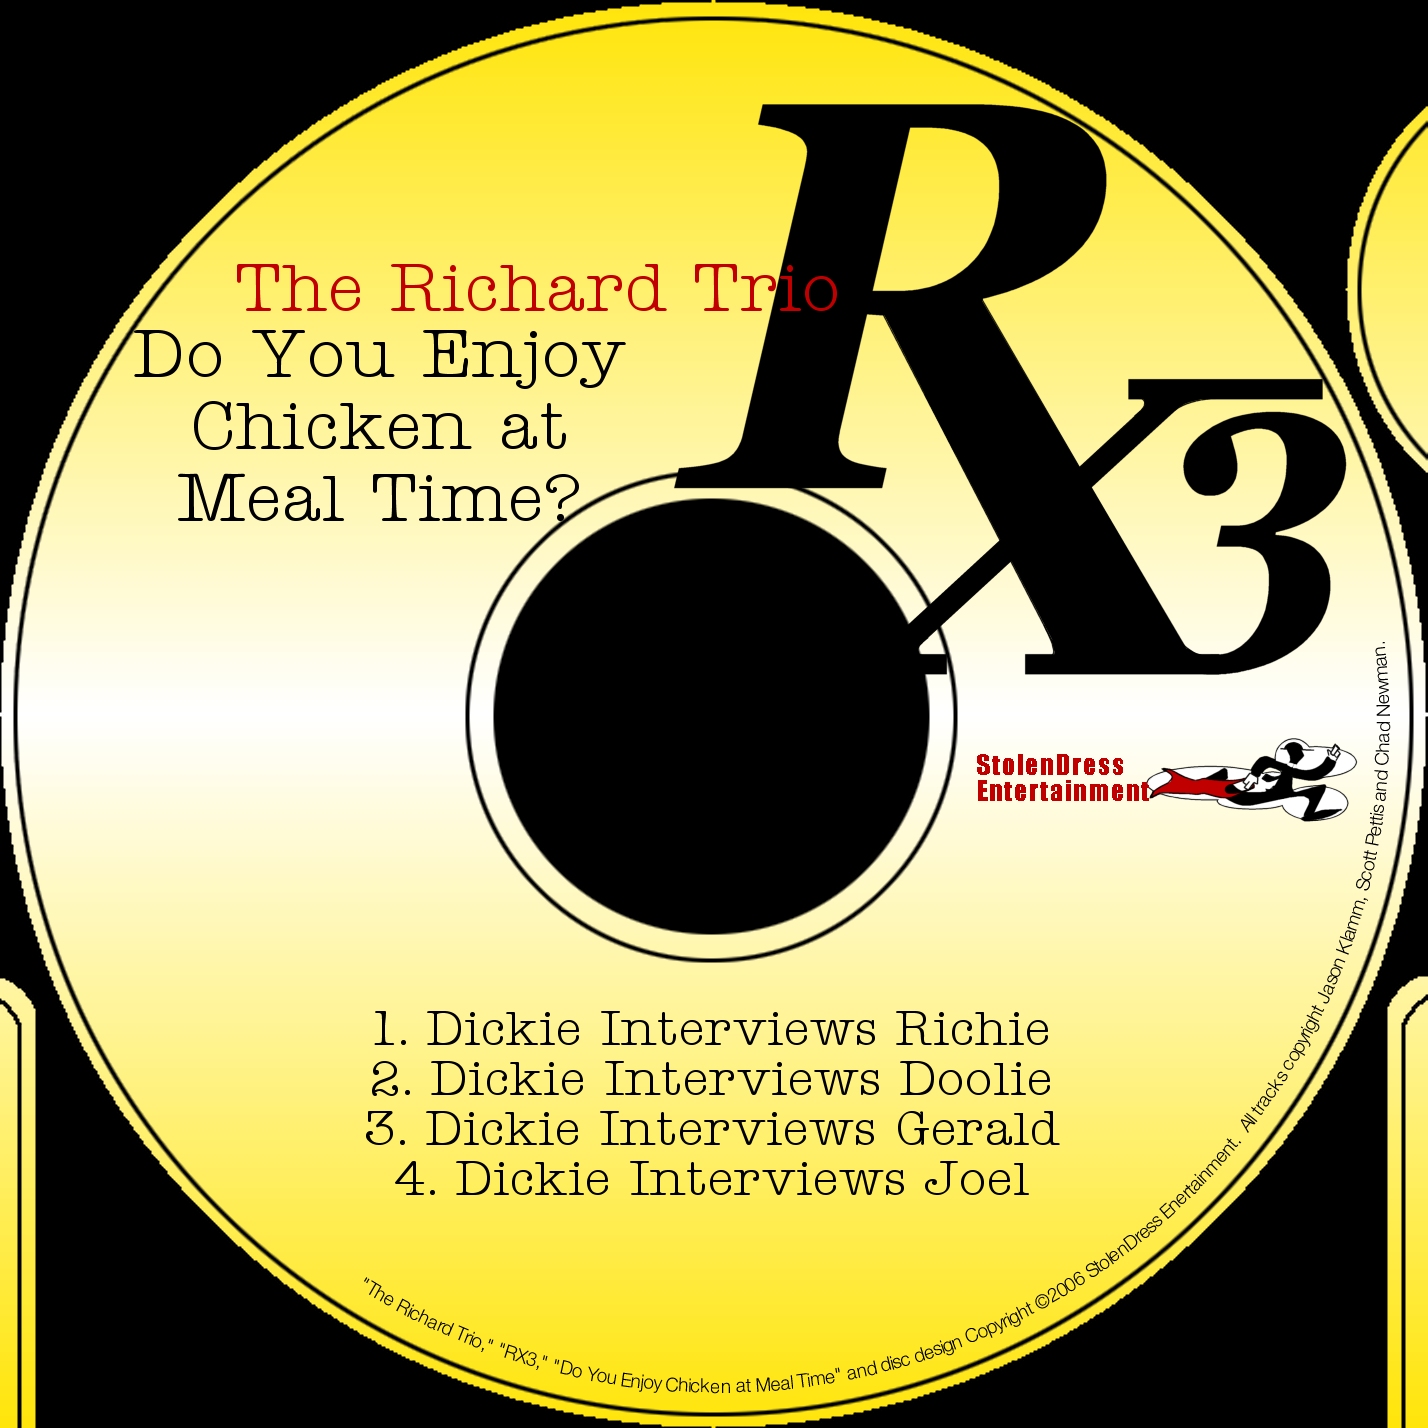 The Richard Trio – Episode 5 – Dickie Interviews Ernie